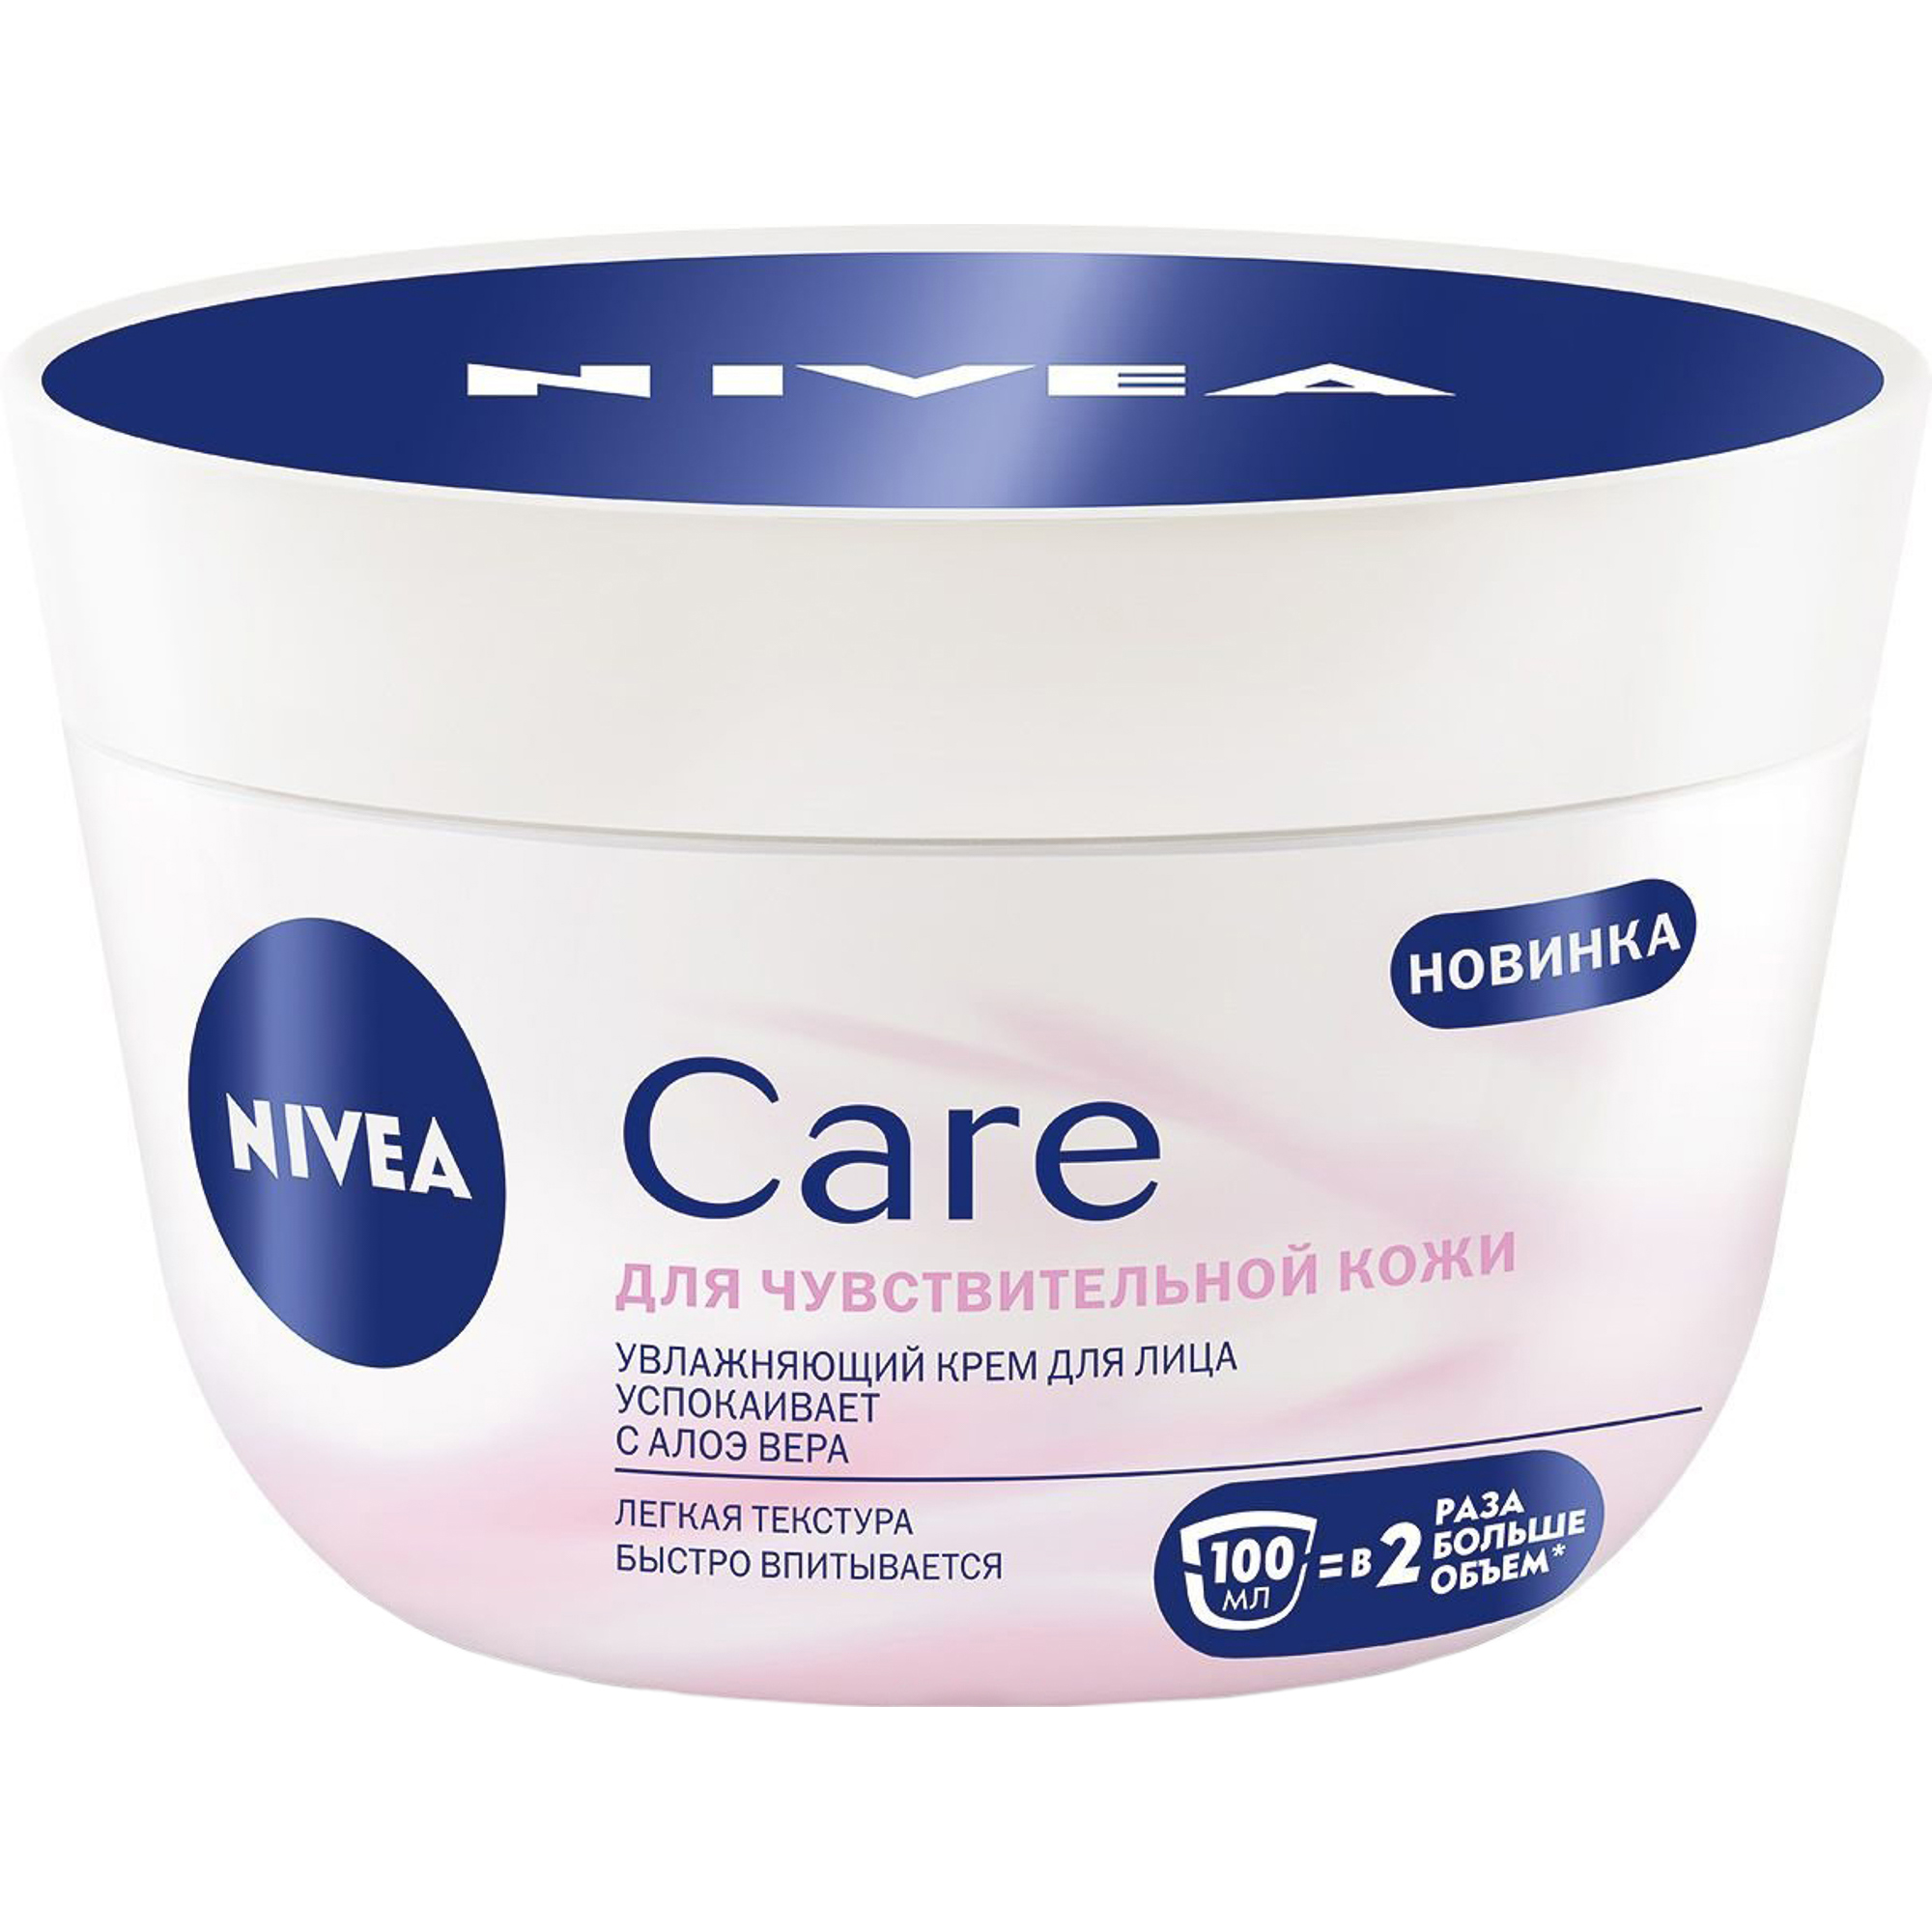 Крем для лица Nivea Care для чувствительной кожи 100 мл крем защитный для кожи барьер бар 002 гидрофильный 100 мл